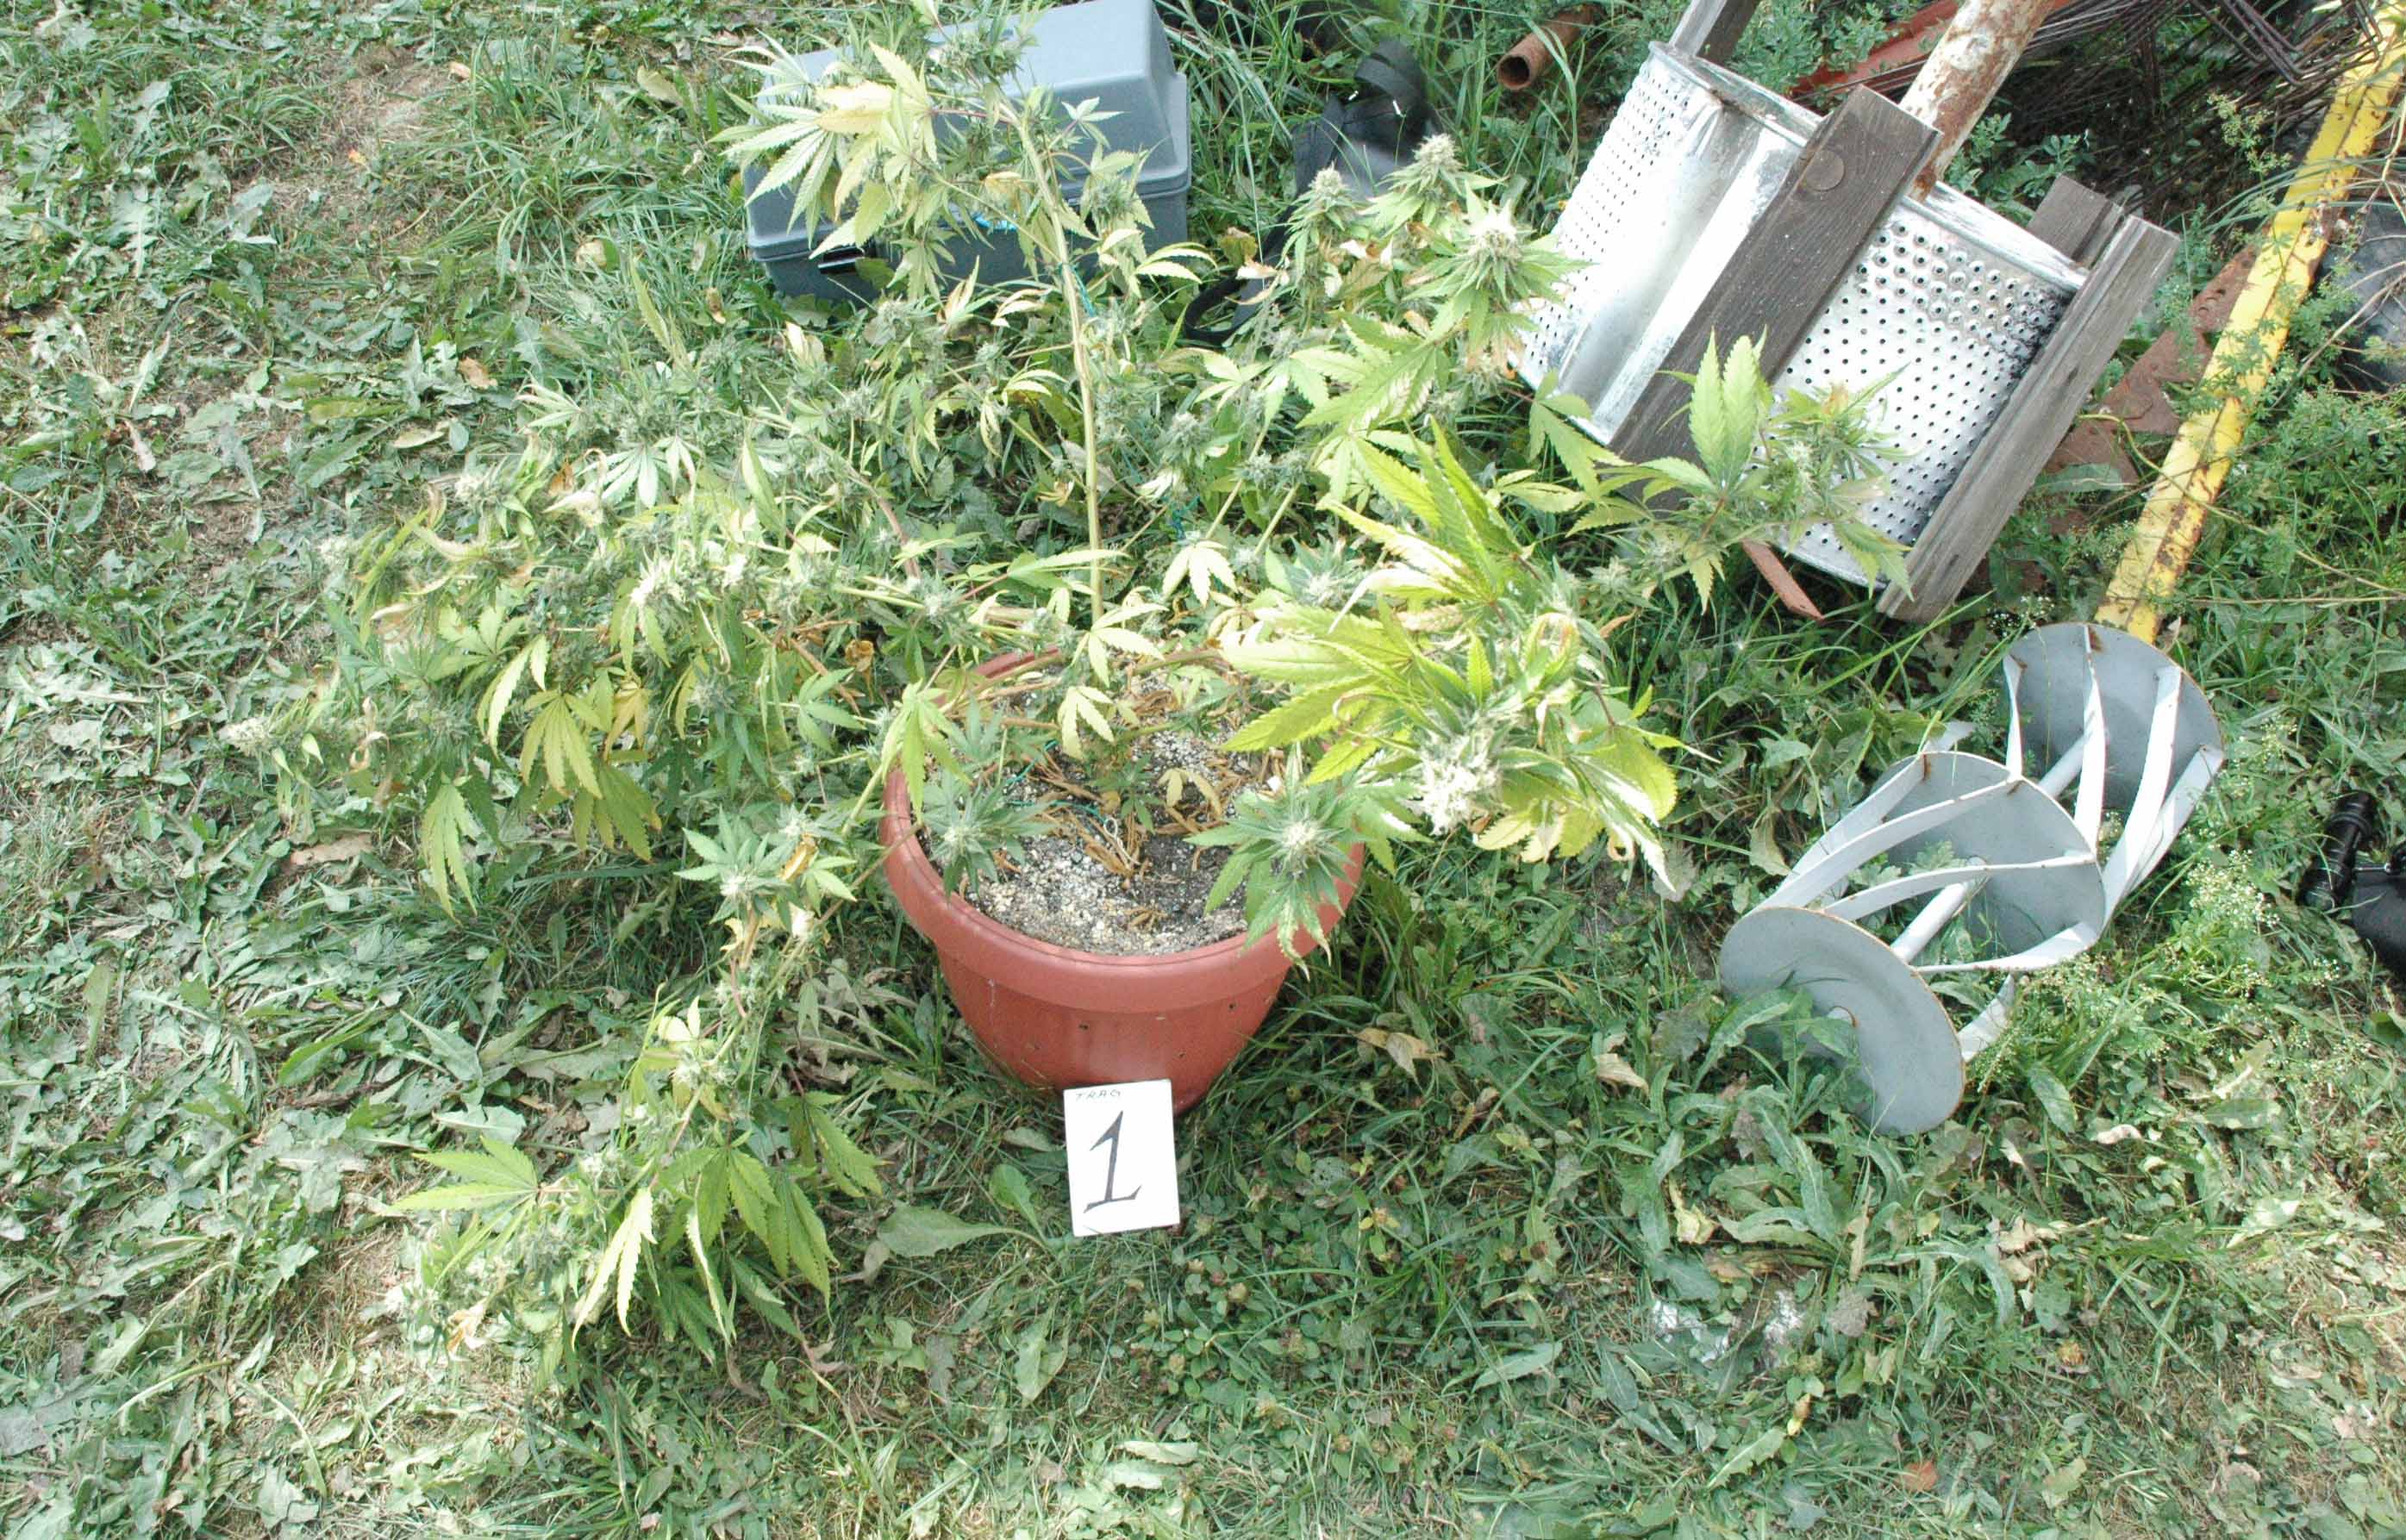 Pronađena laboratorija za uzgoj marihuane